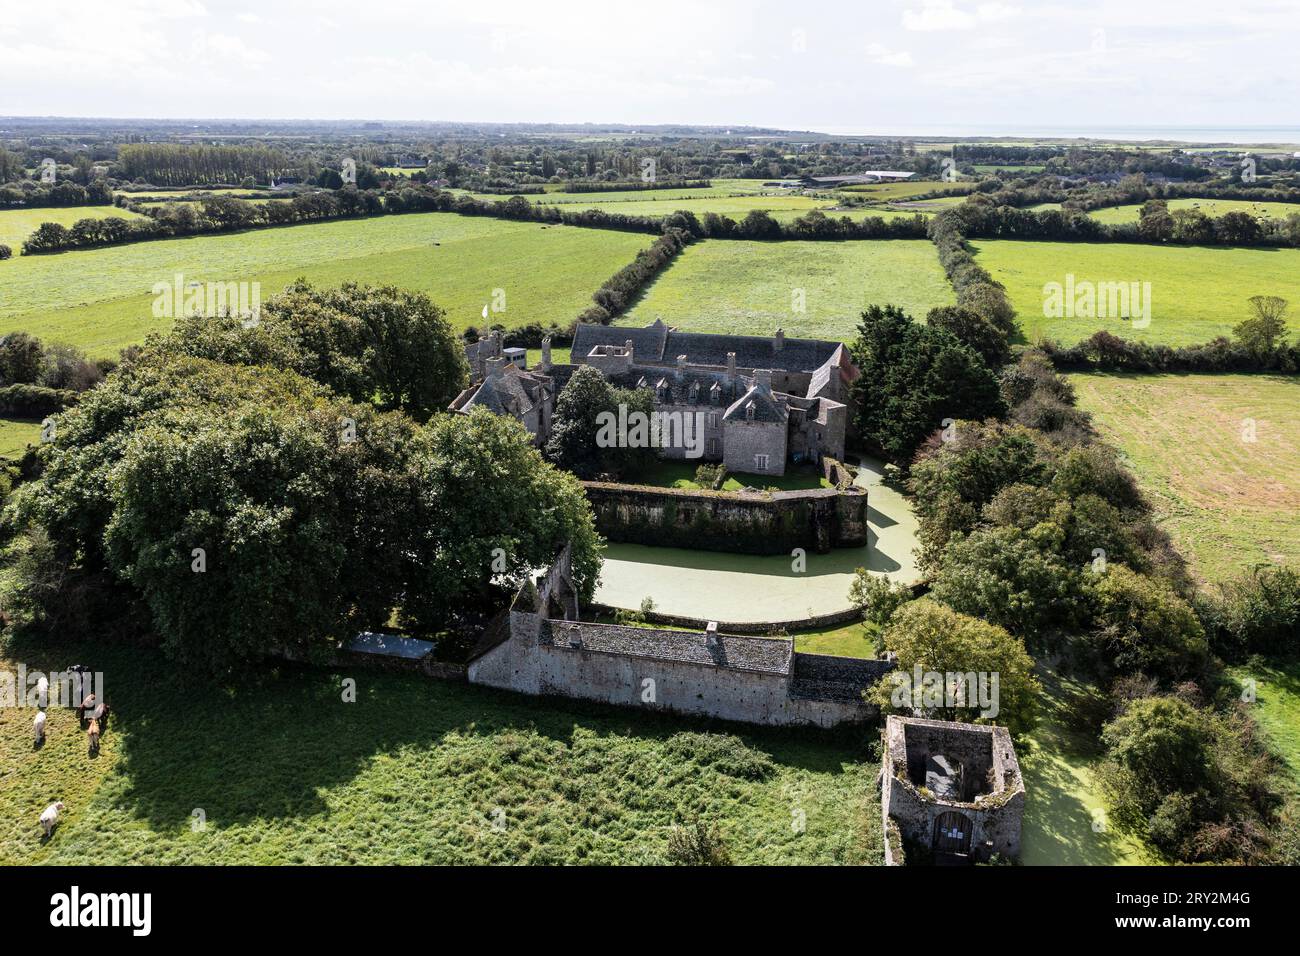 Drohnenaufnahme von Chateau Pirou - Burg Pirou Wasserschloß in der Normandie Stockfoto